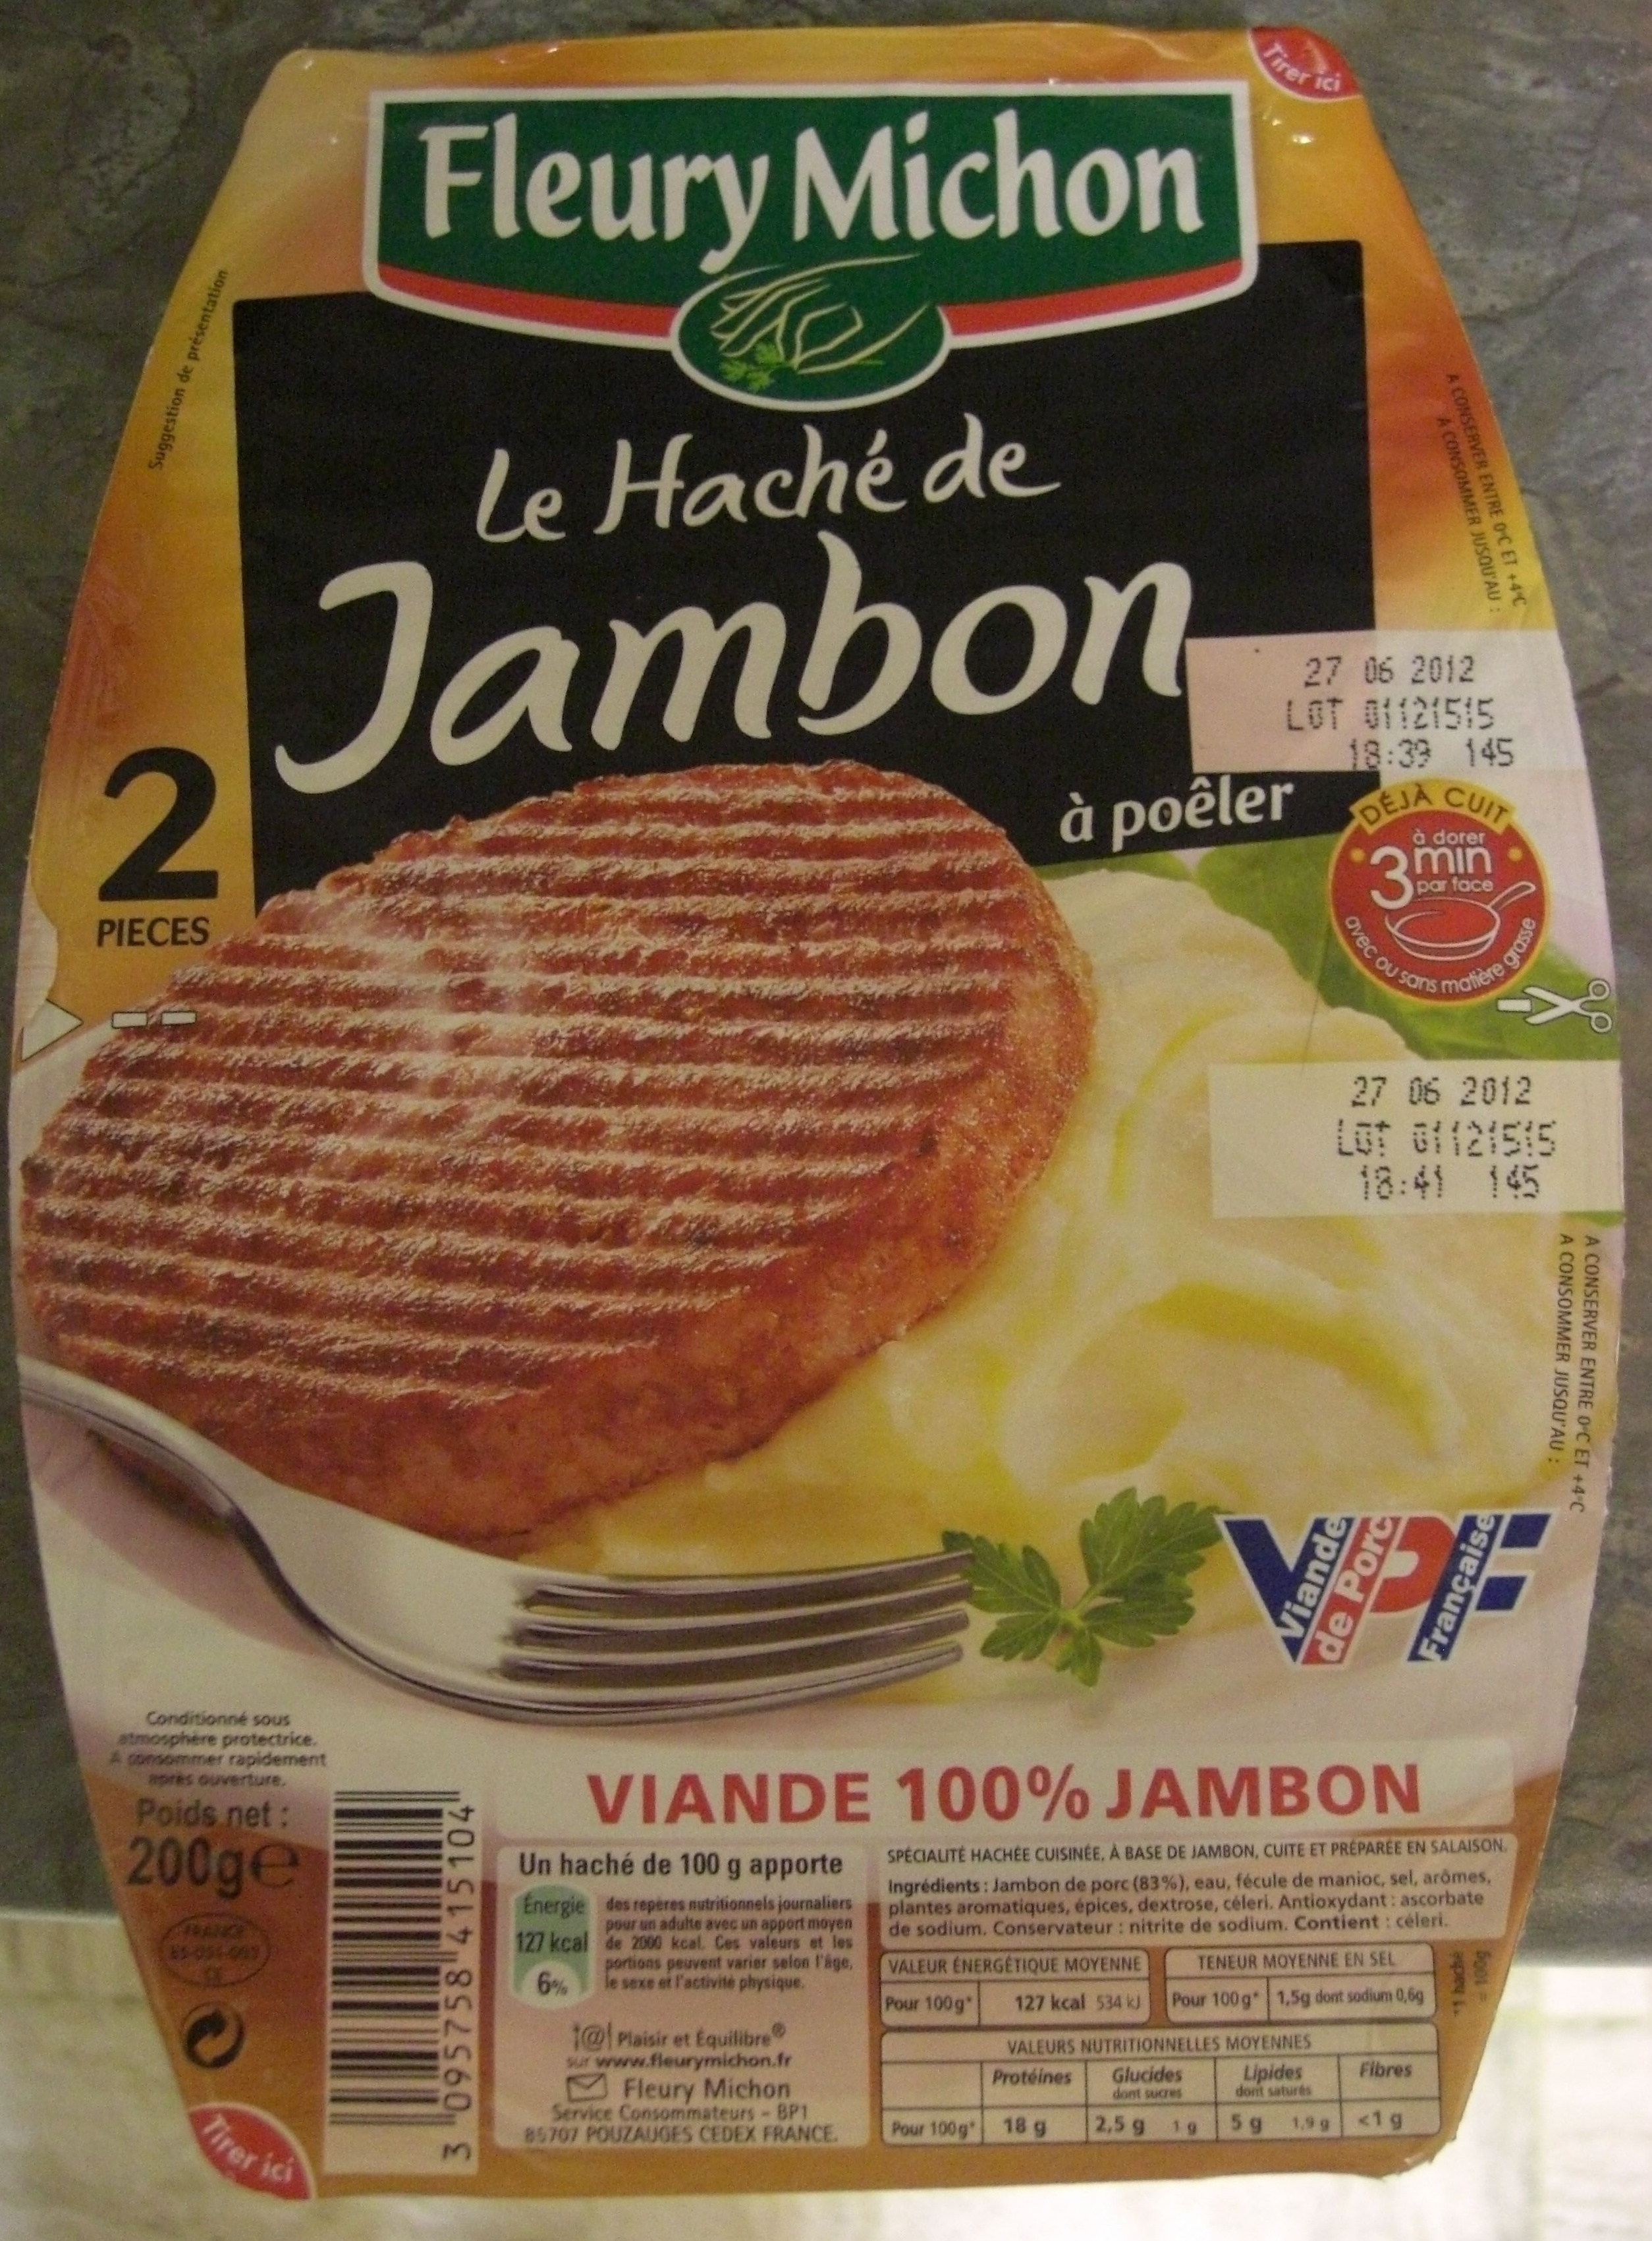 Le Haché de Jambon à poêler (2 Pièces) - Product - fr